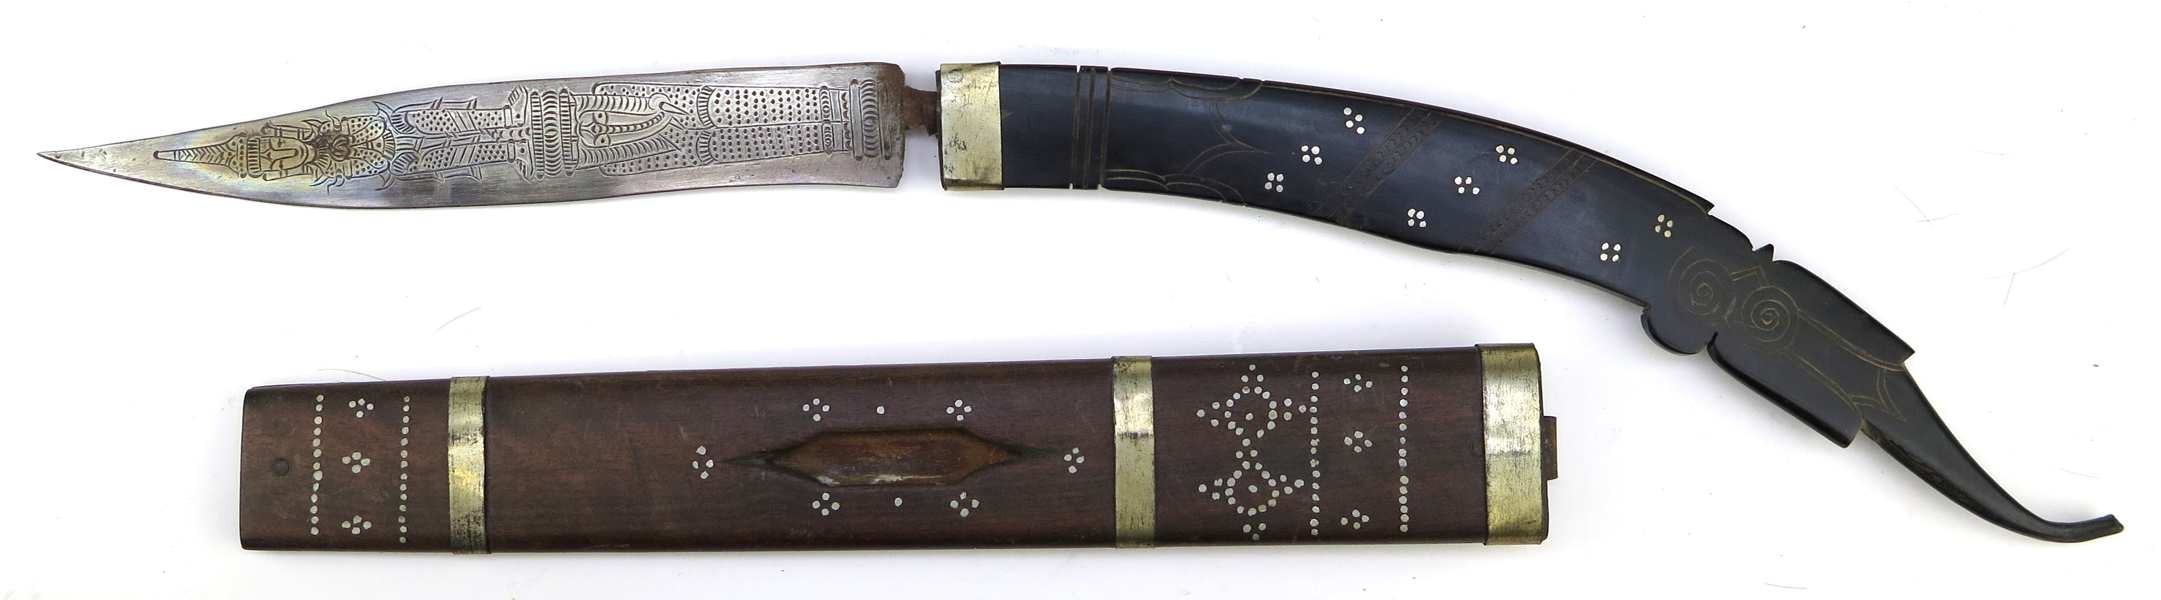 Kniv i balja, trä, horn och smide, så kallad Chin, Burma, 1900-tal. rikt dekorerad klinga, total l 63 cm_29600a_8db730cec4c94db_lg.jpeg